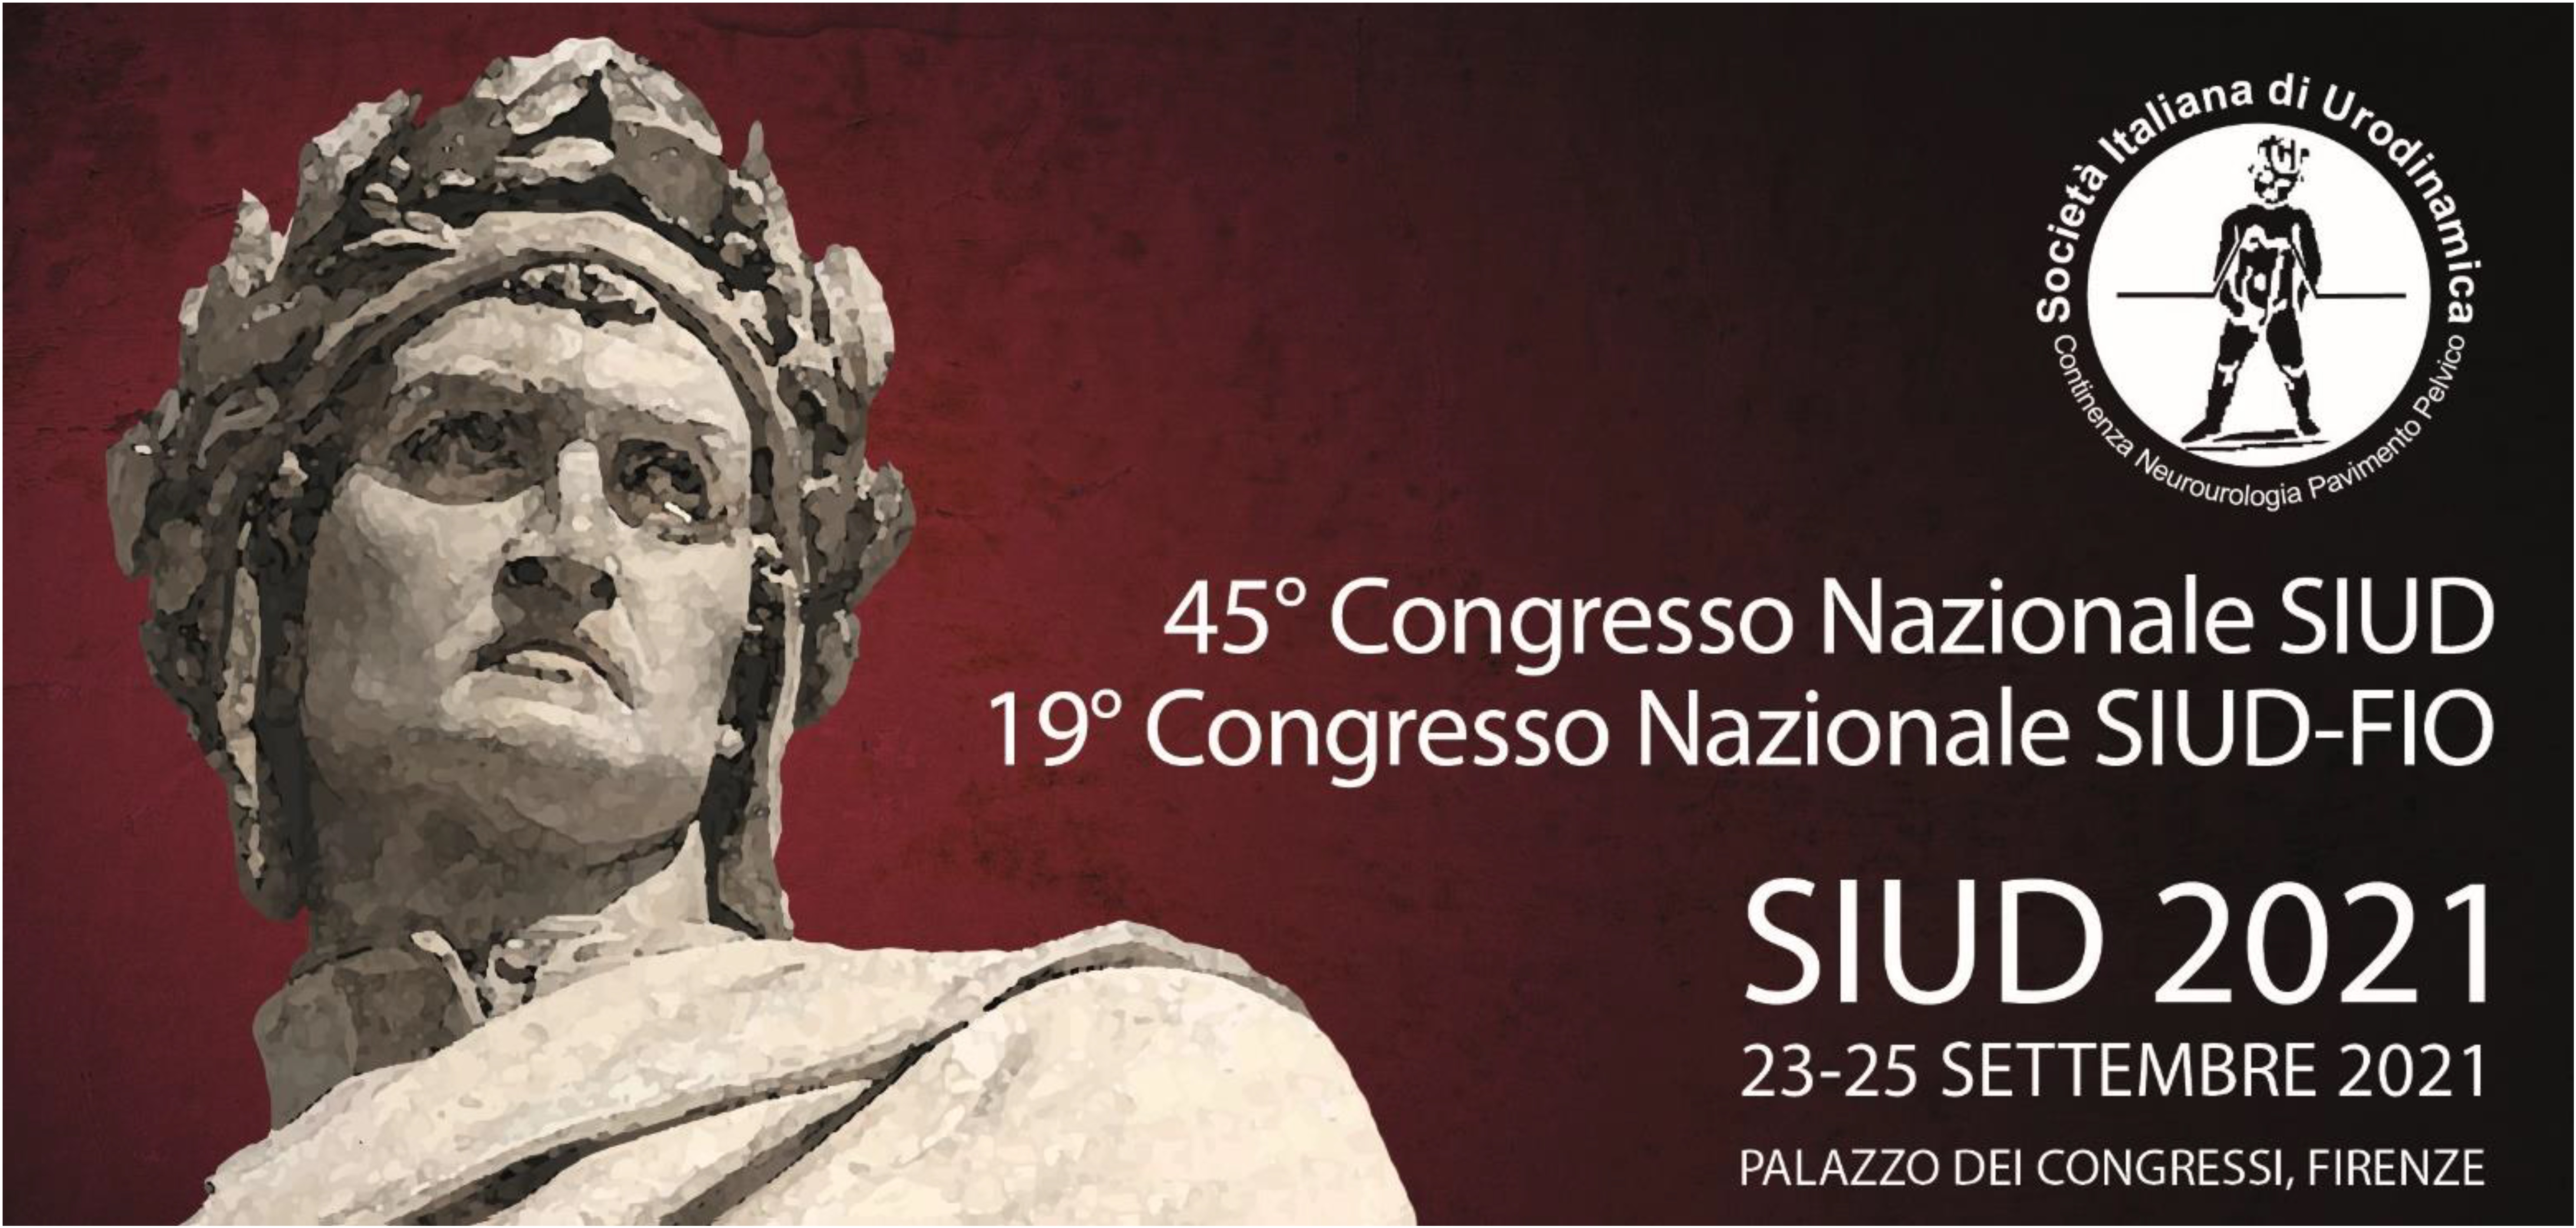 23-25 settembre, Palazzo dei Congressi, Firenze